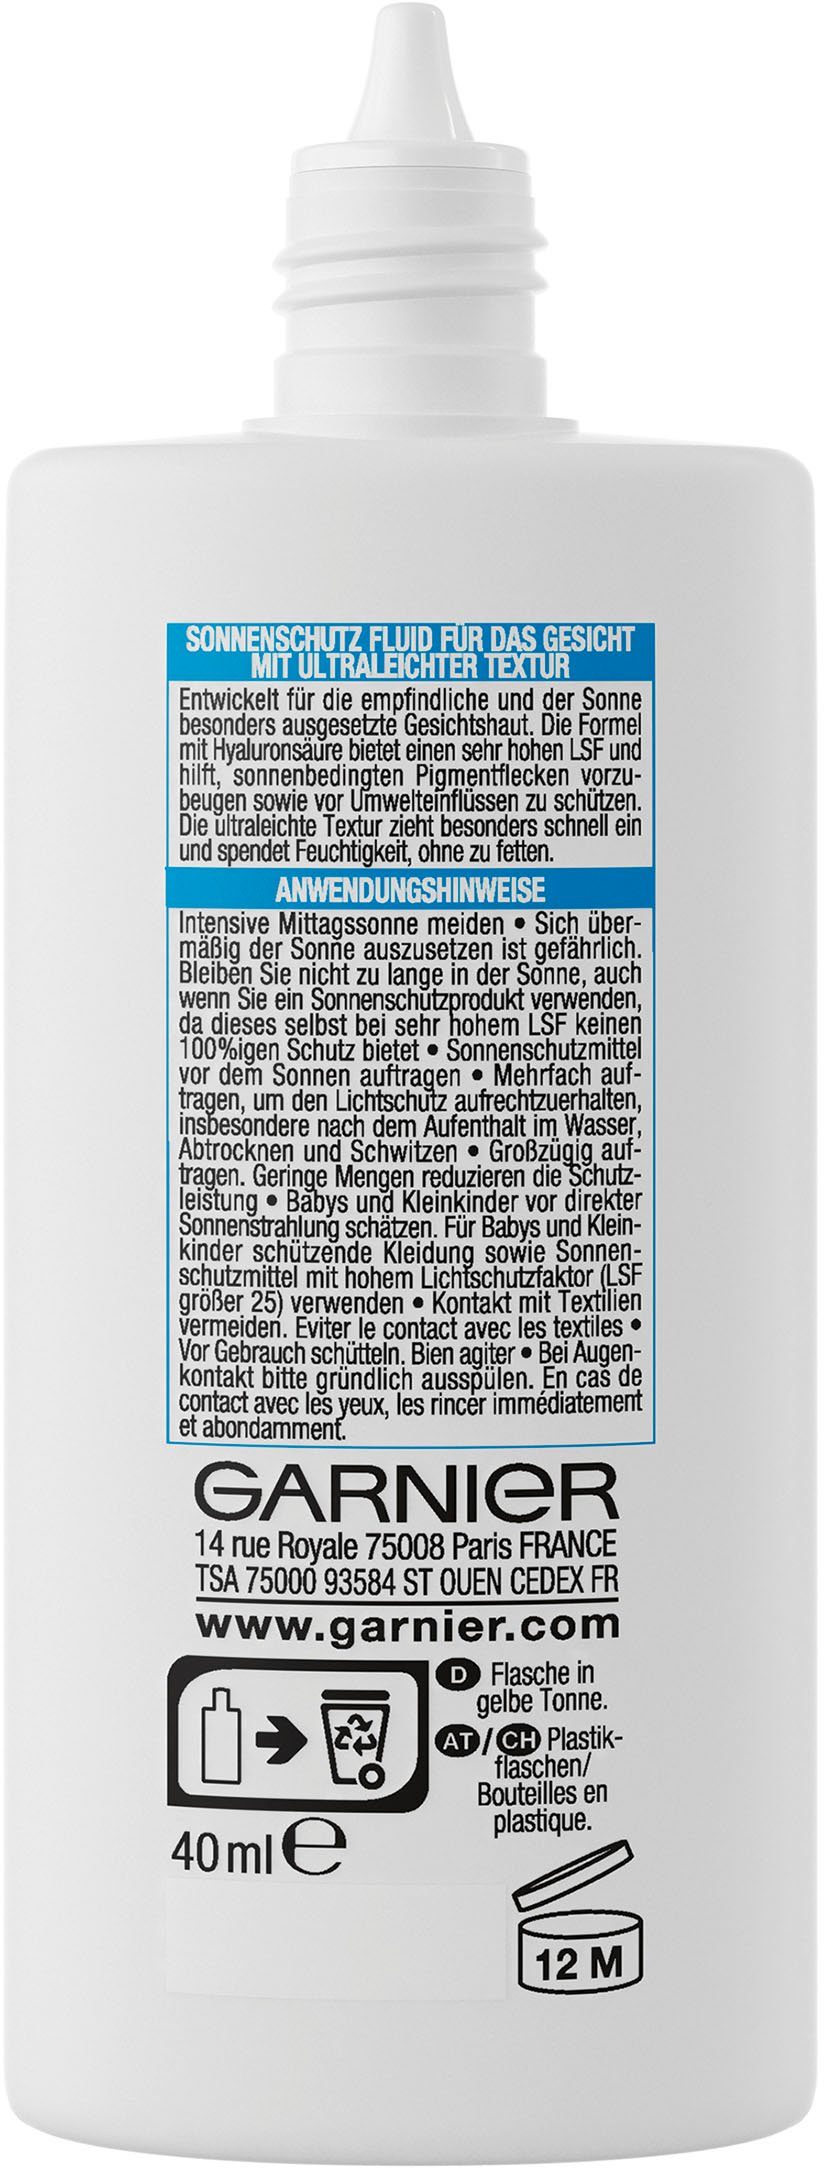 Sonnenschutzfluid GARNIER LSF Solaire expert+, Ambre mit Sensitive Hyaluronsäure 50